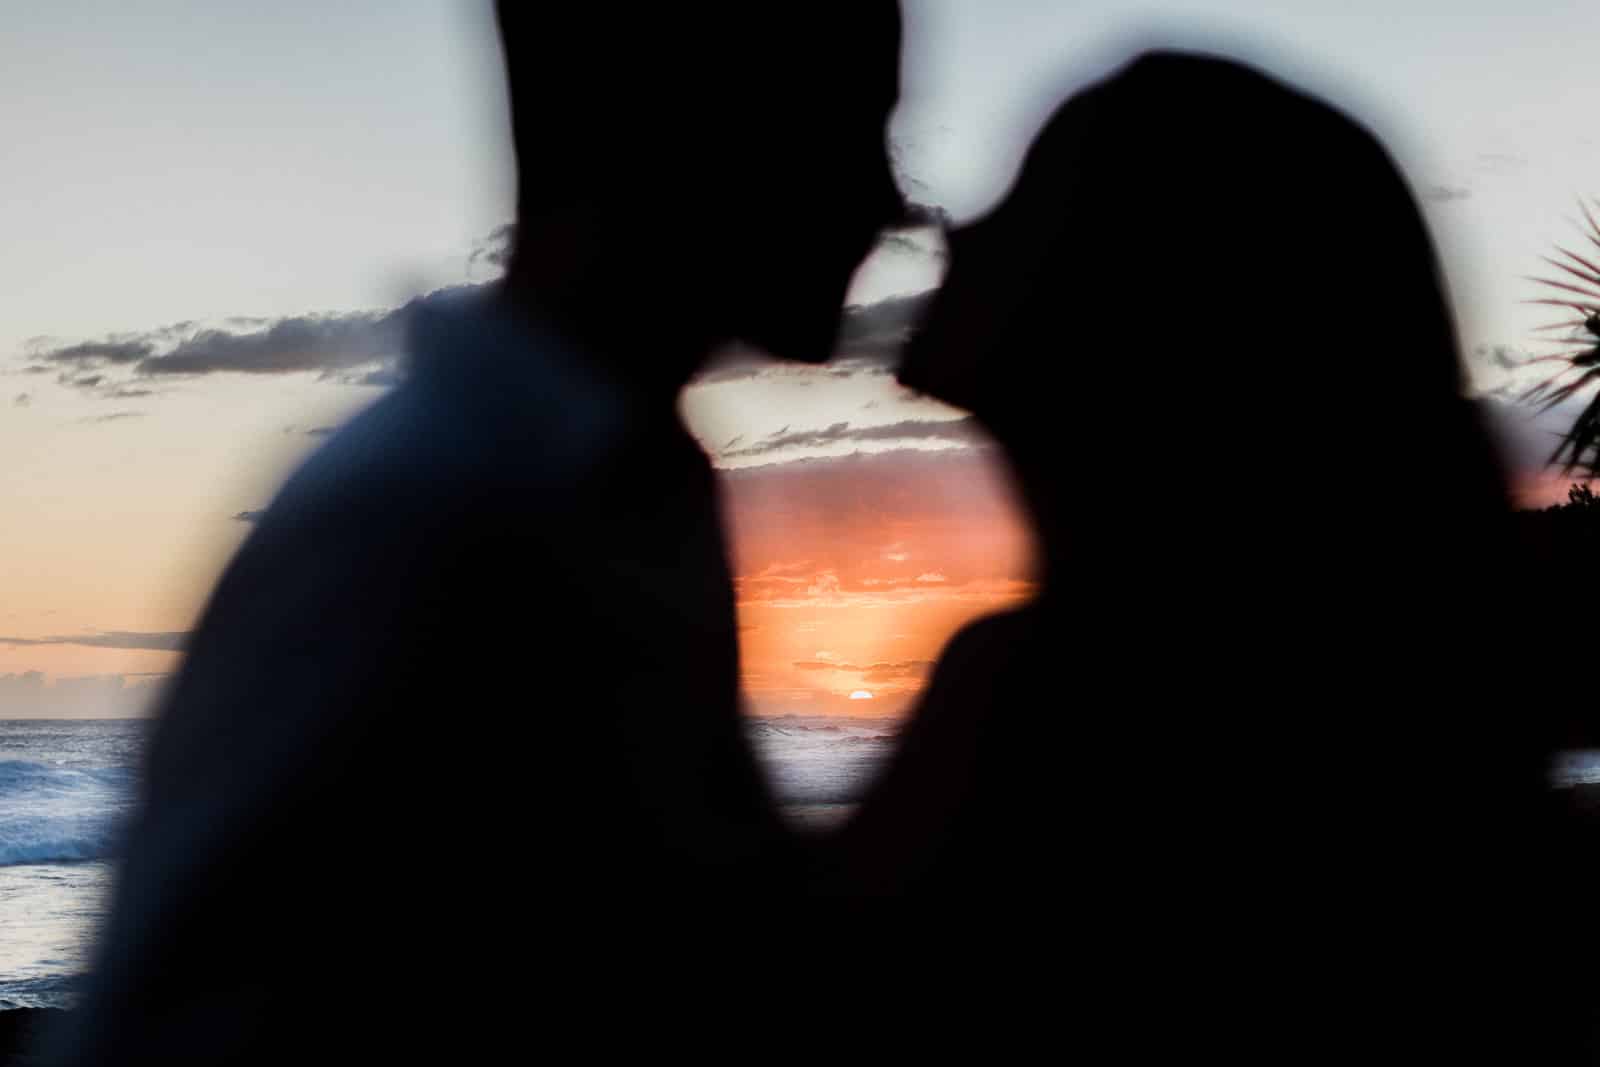 Photographie de Mathieu Dété, photographe de mariage et de couple à Saint-Joseph sur l'île de la Réunion 974, présentant le coucher de soleil à travers les silhouettes d'un couple